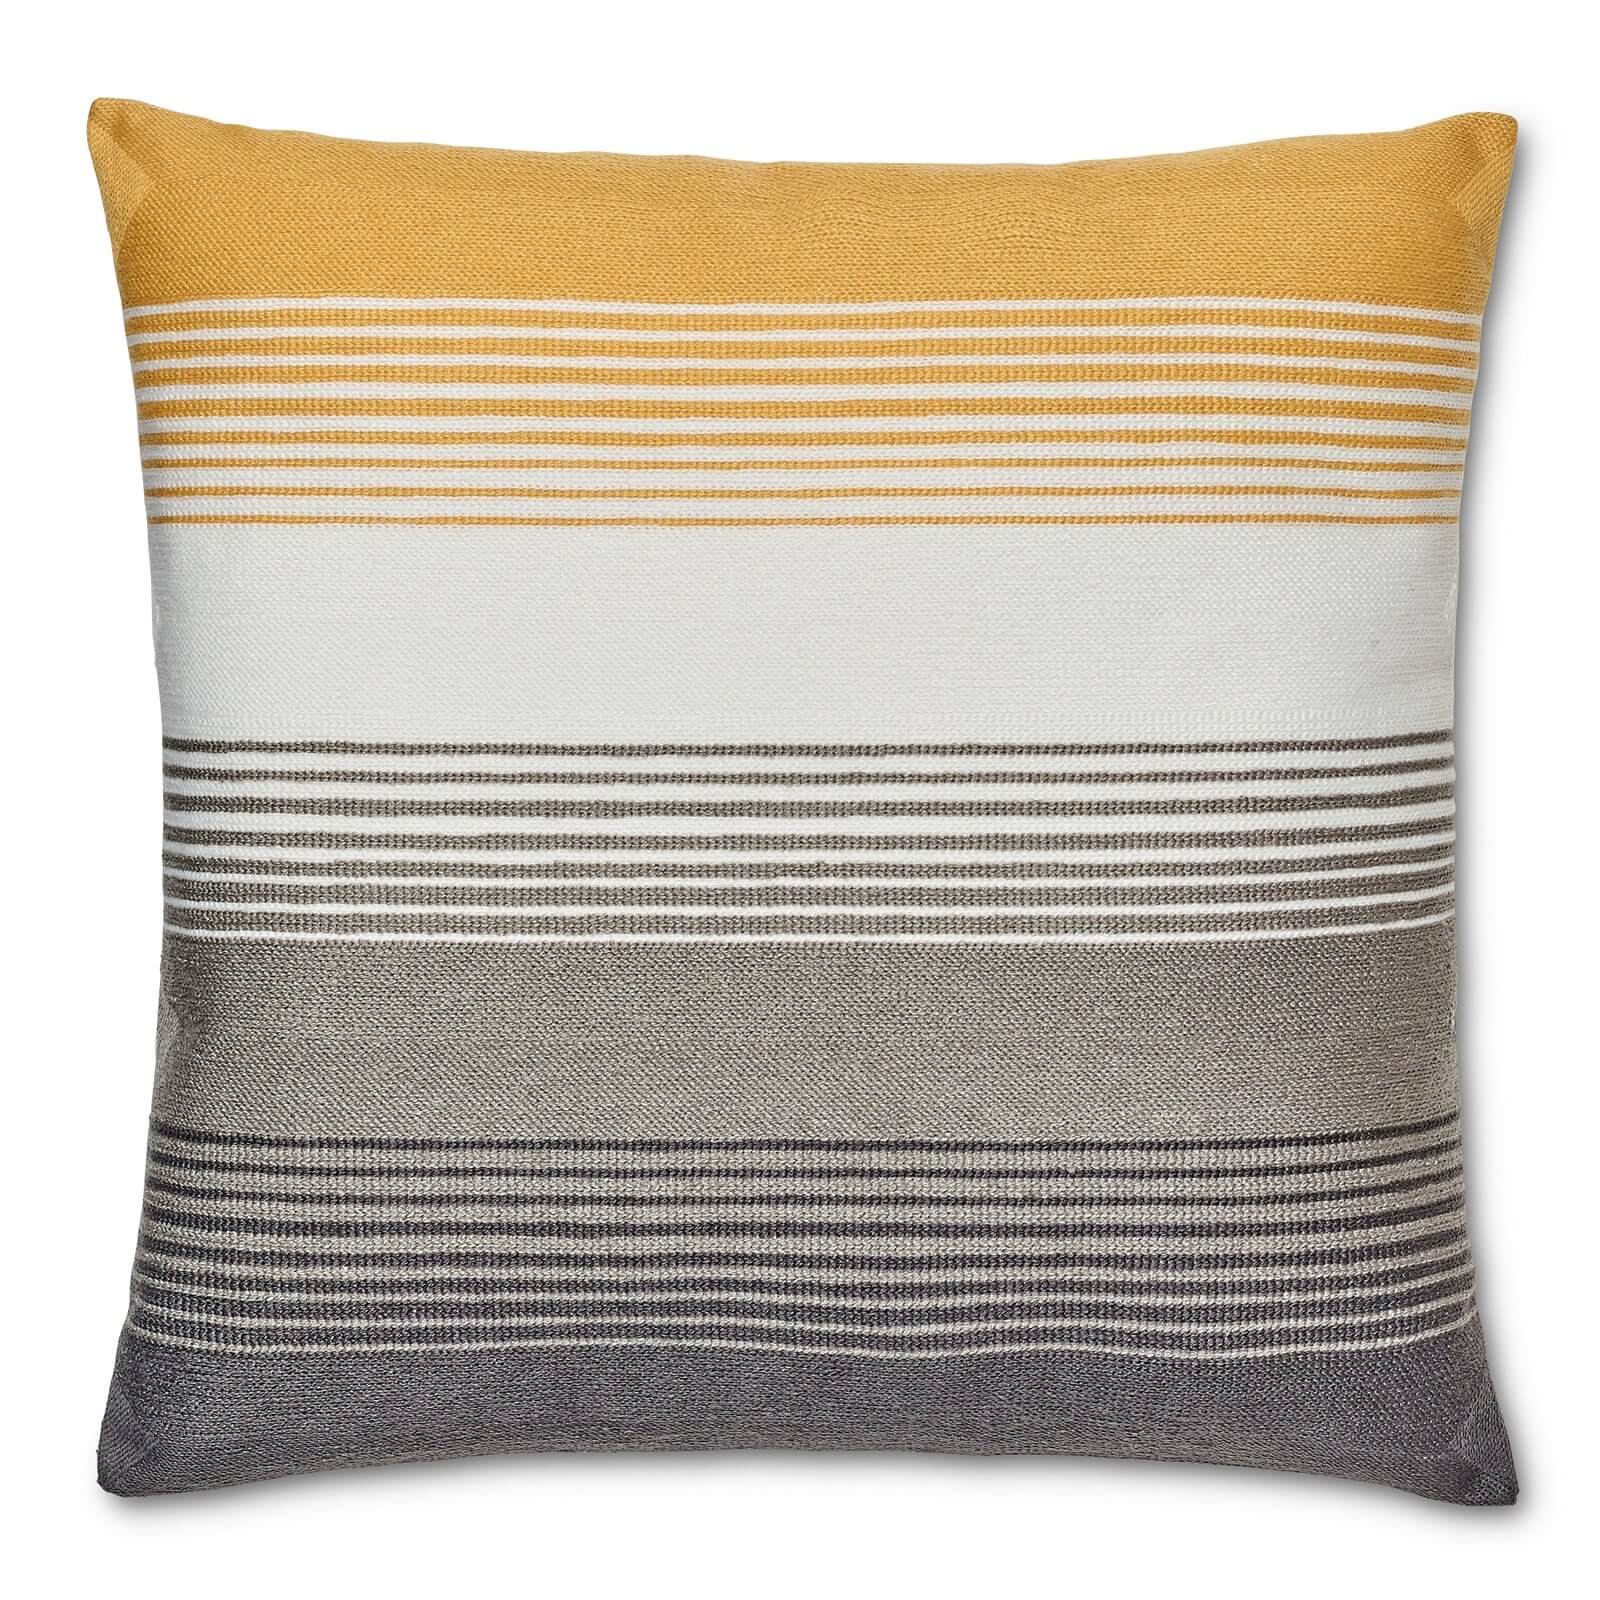 Photo of Striped Cushion - Ochre & Grey